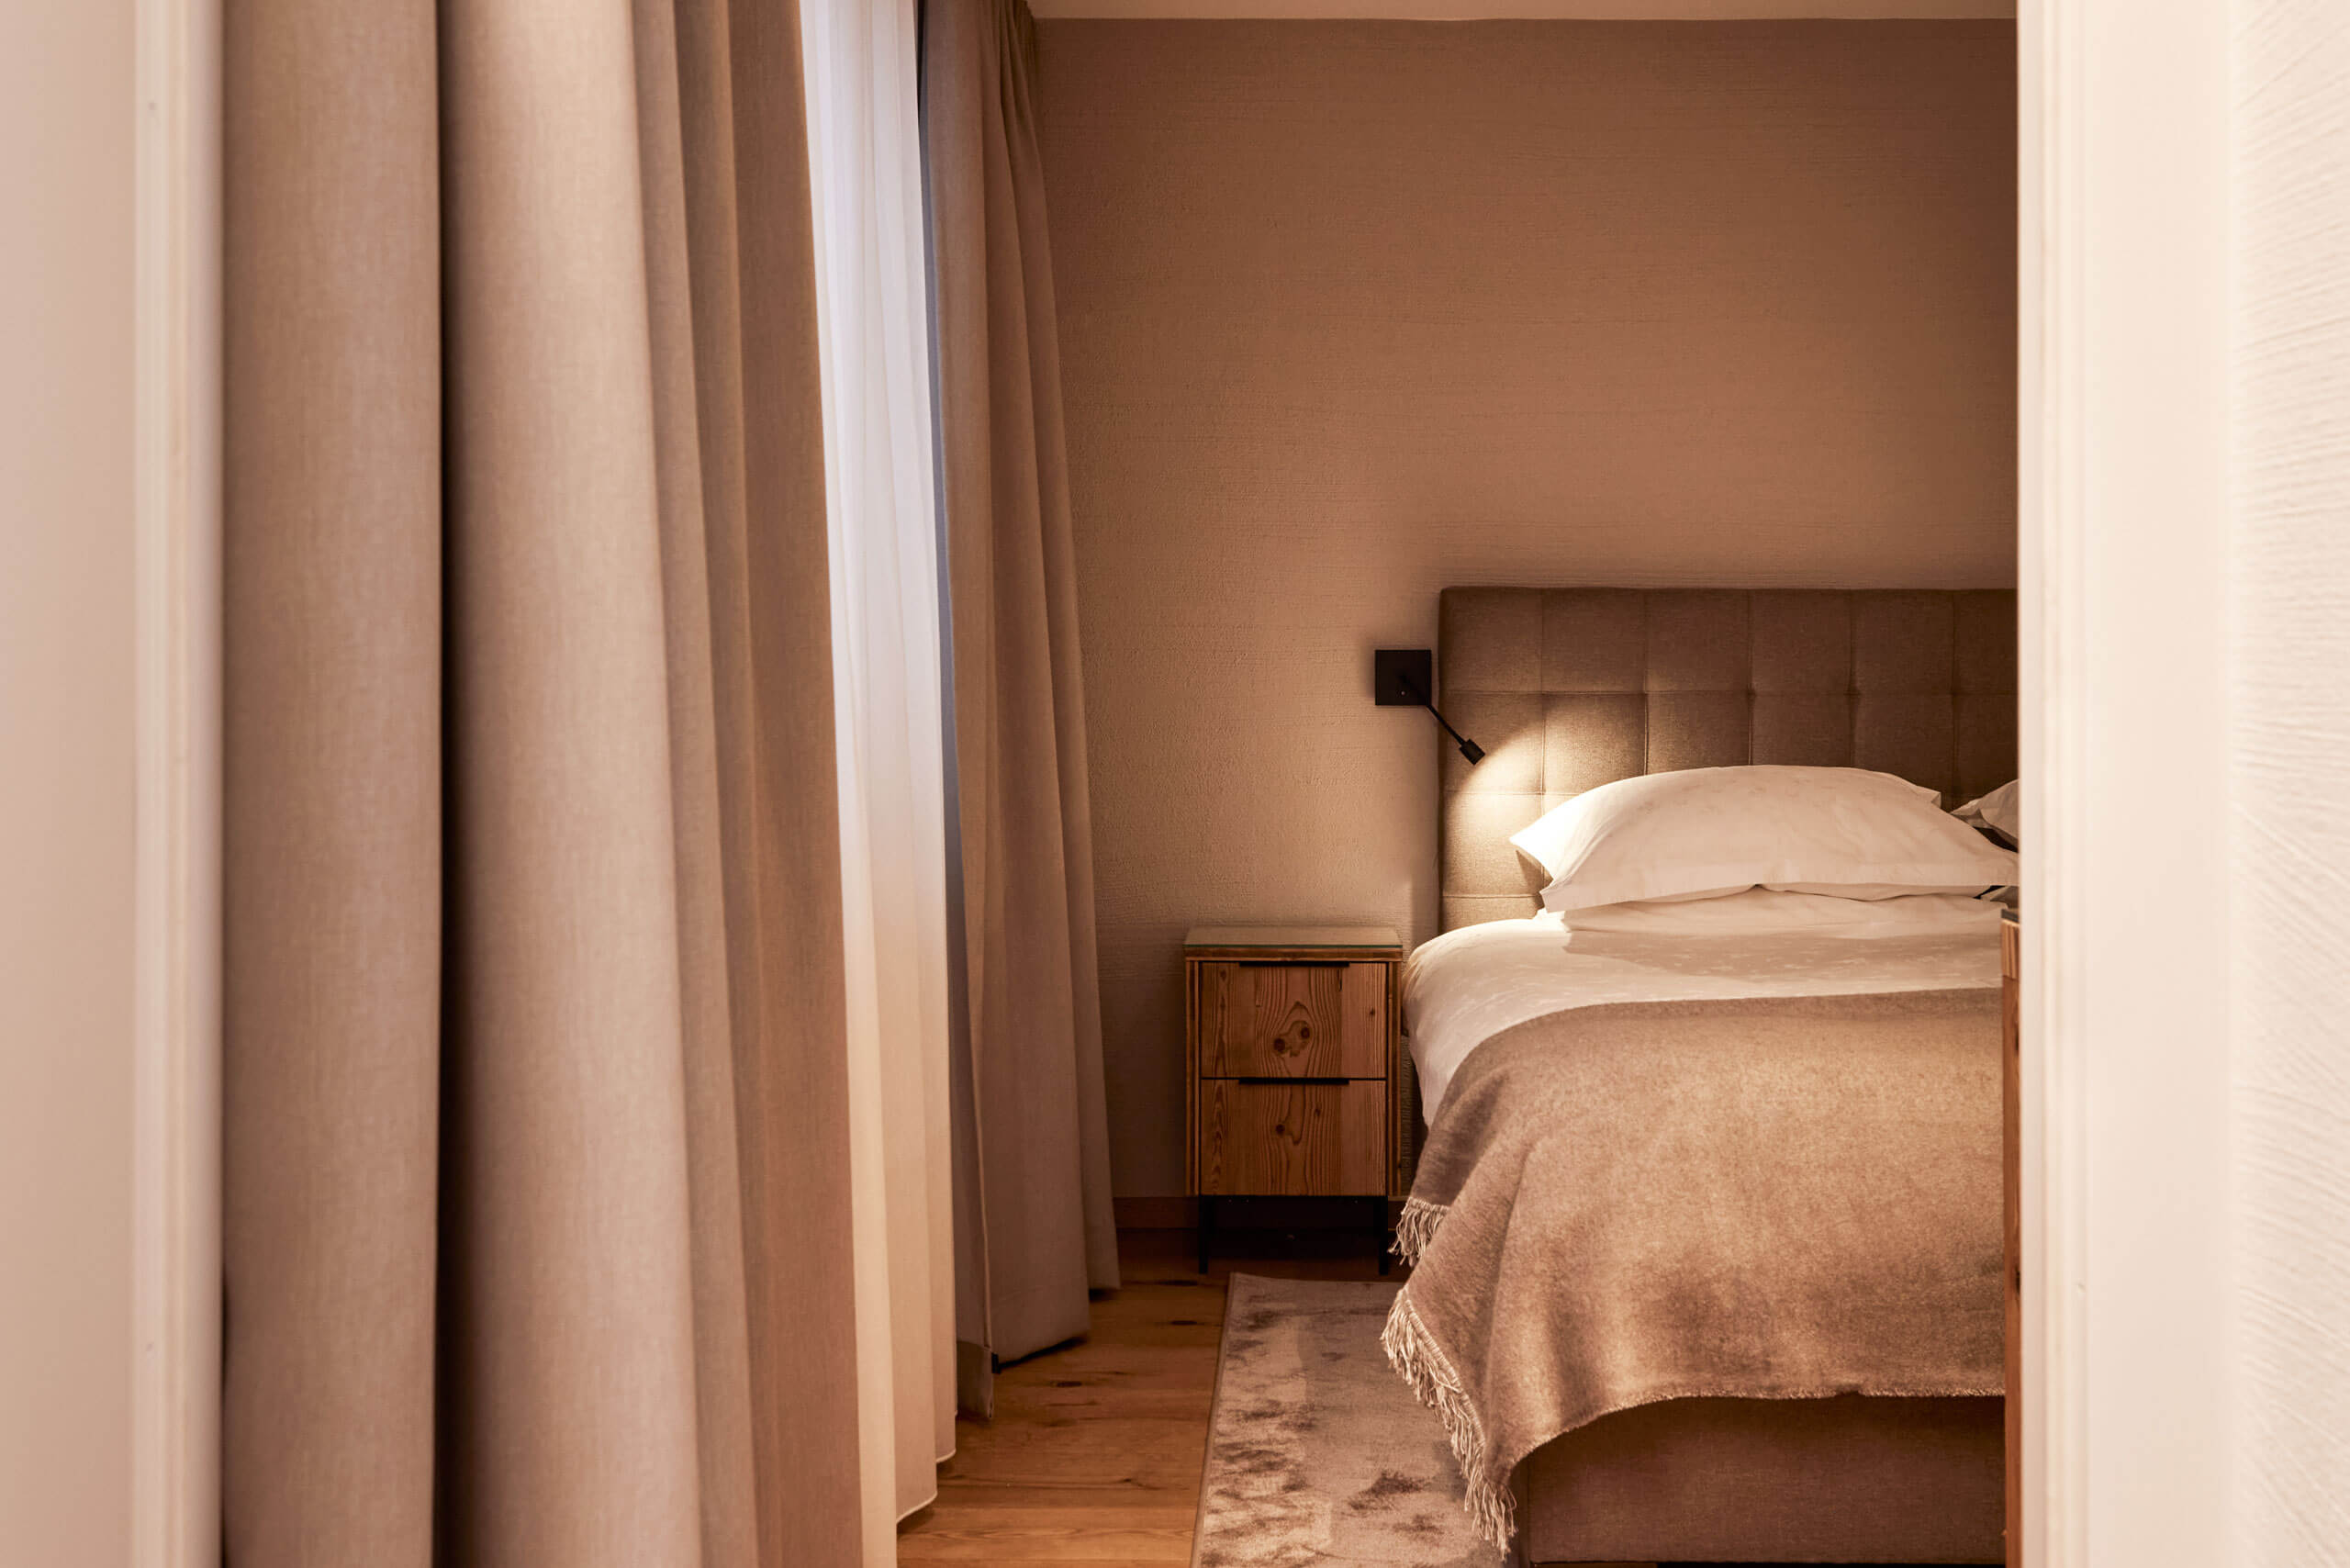 Ein Bett mit einem Licht an der Seite in der Prinzensuite im TOP Hotel Hochgurgl, einer alpinen Suit